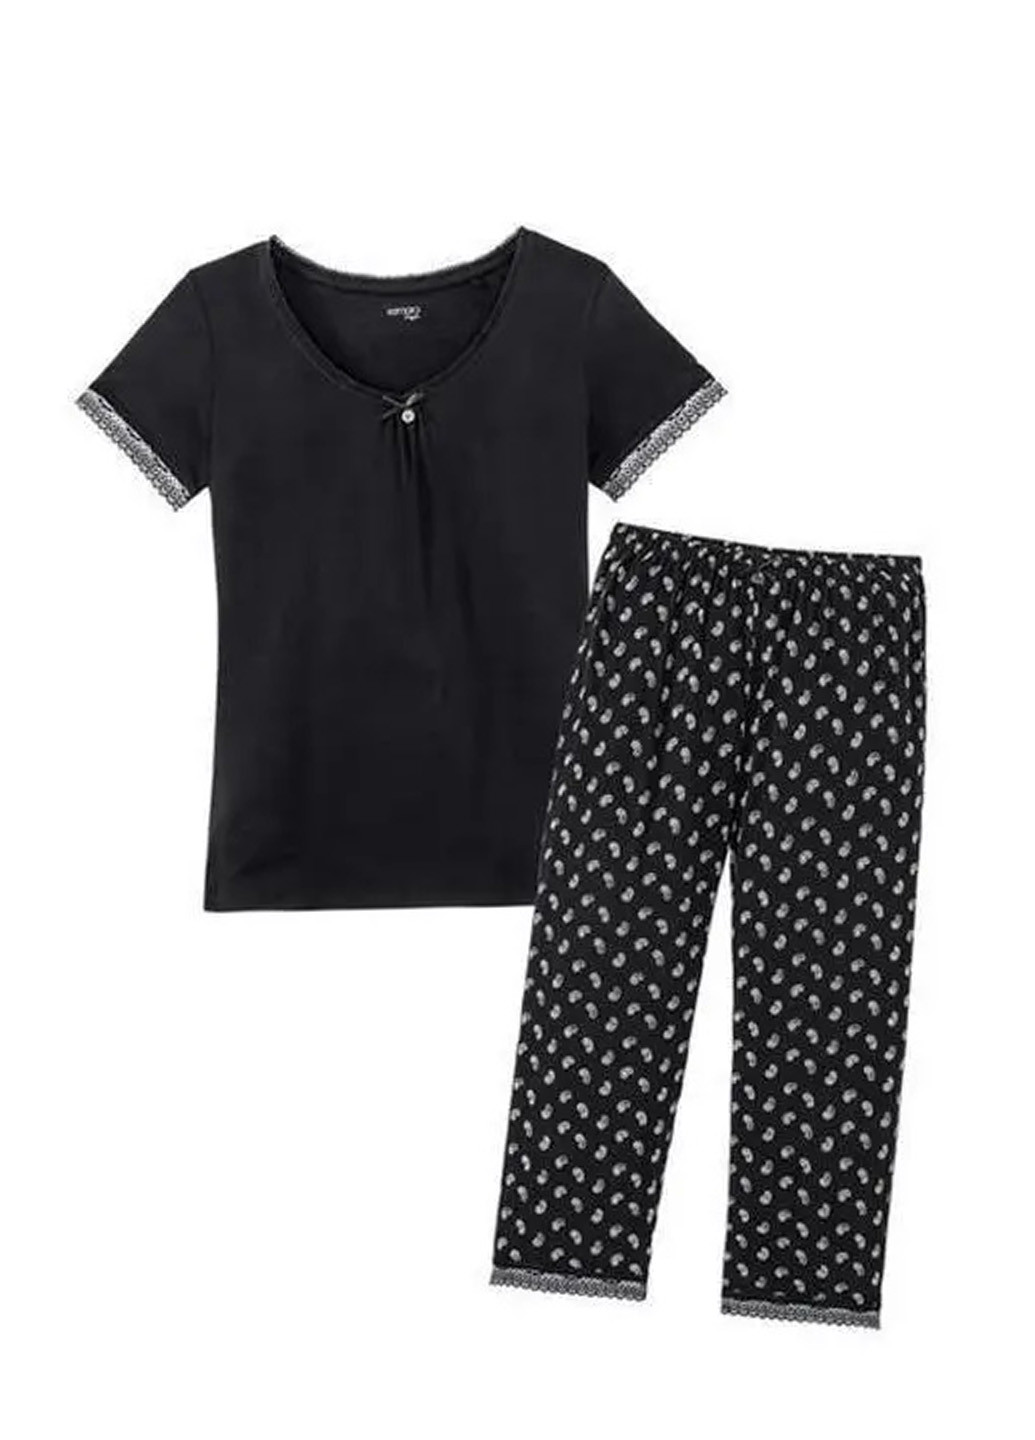 Черная всесезон пижама (футболка, бриджи) футболка + бриджи Esmara